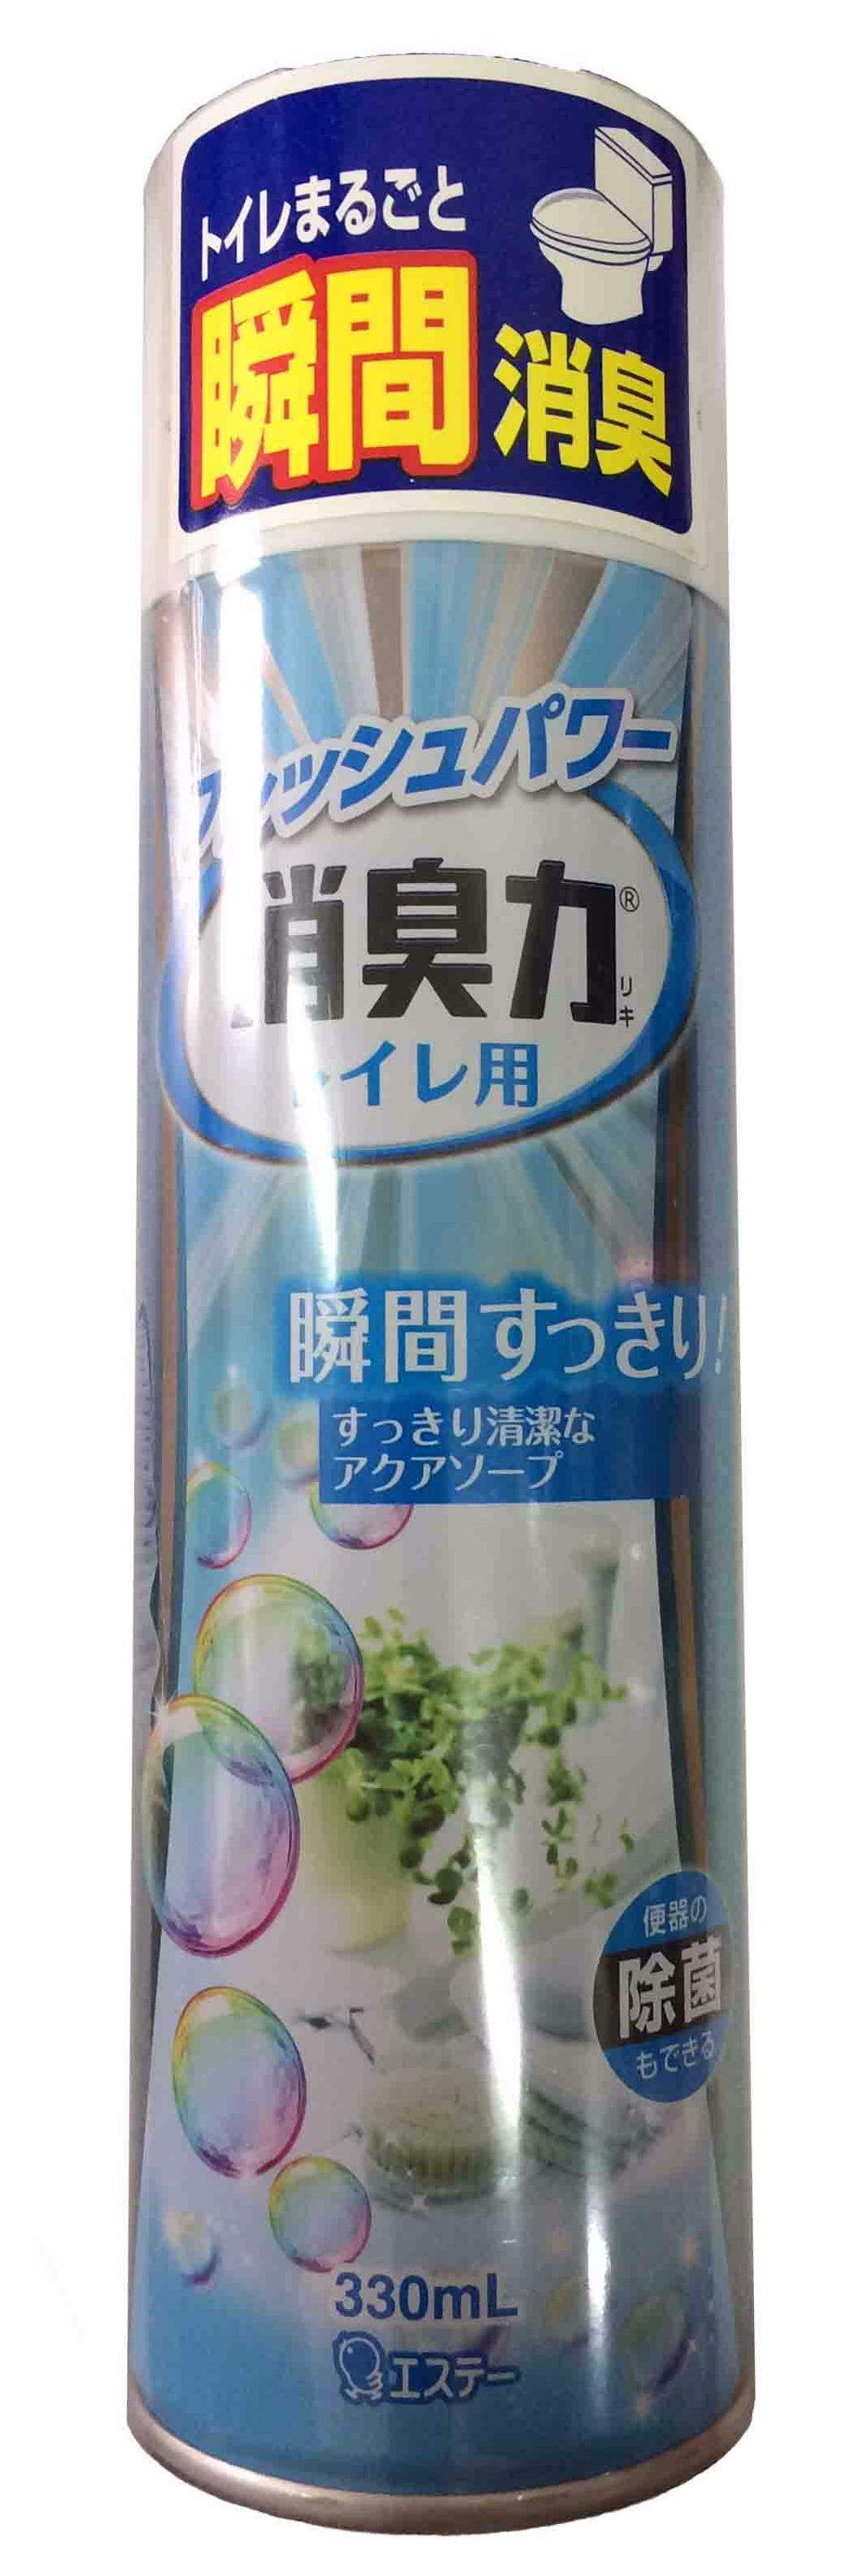 ST Shoushuuriki Освежитель воздуха антибактериальный для туалета с ароматом Свежести 330 мл